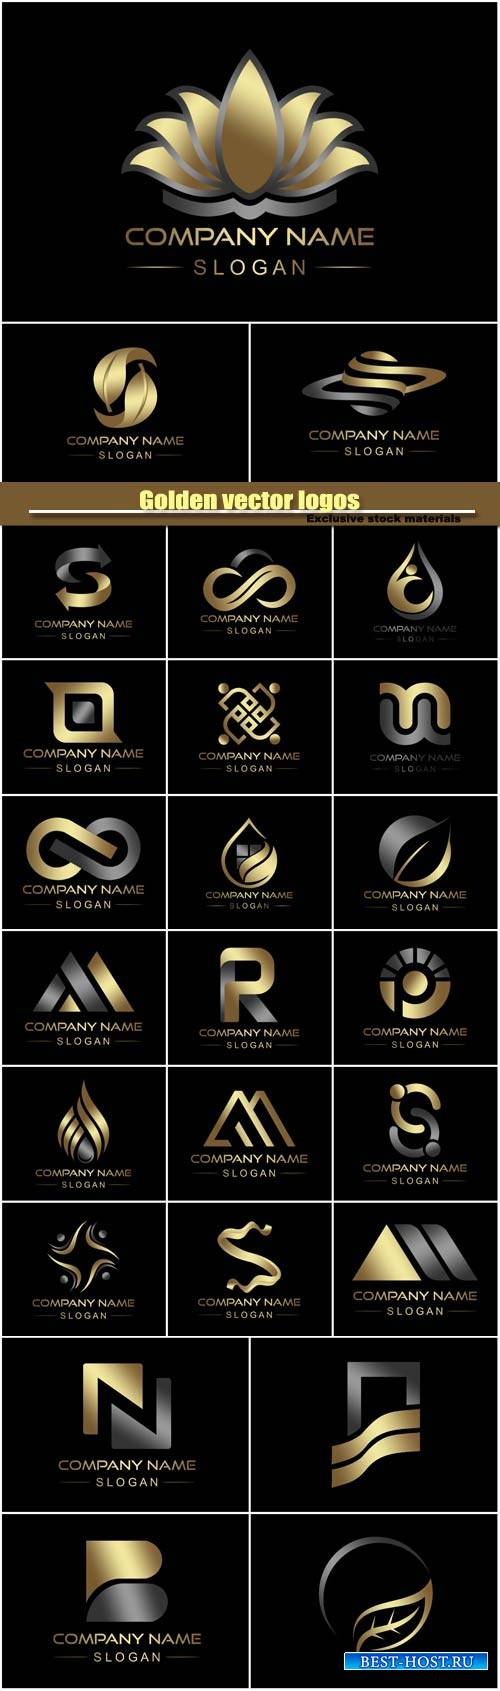 Golden vector logos, business company icon